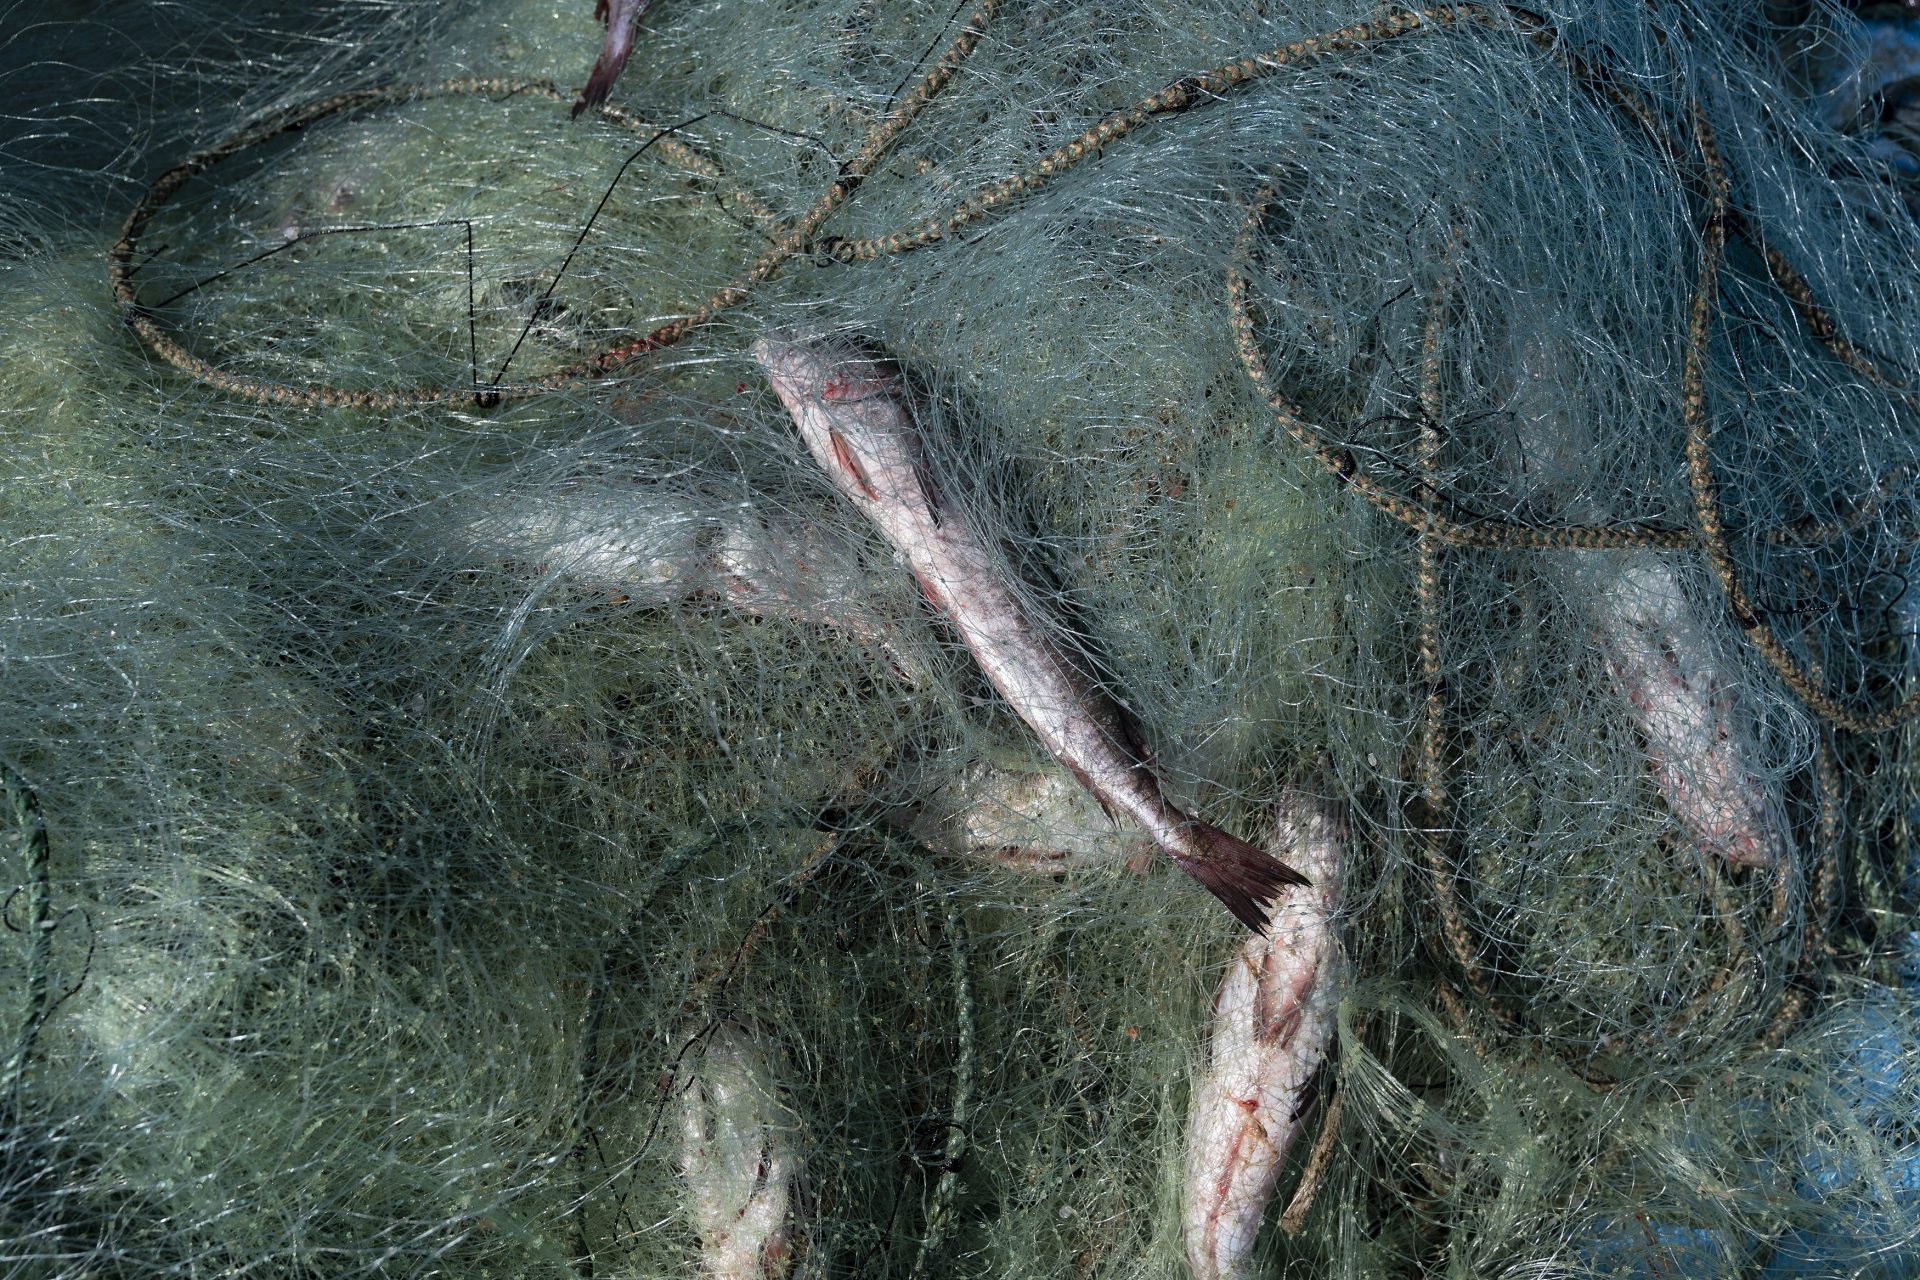 Una red de pesca recogida en Chile, para los pequeños pescadores supone un reto difícil reciclar las redes de pesca.